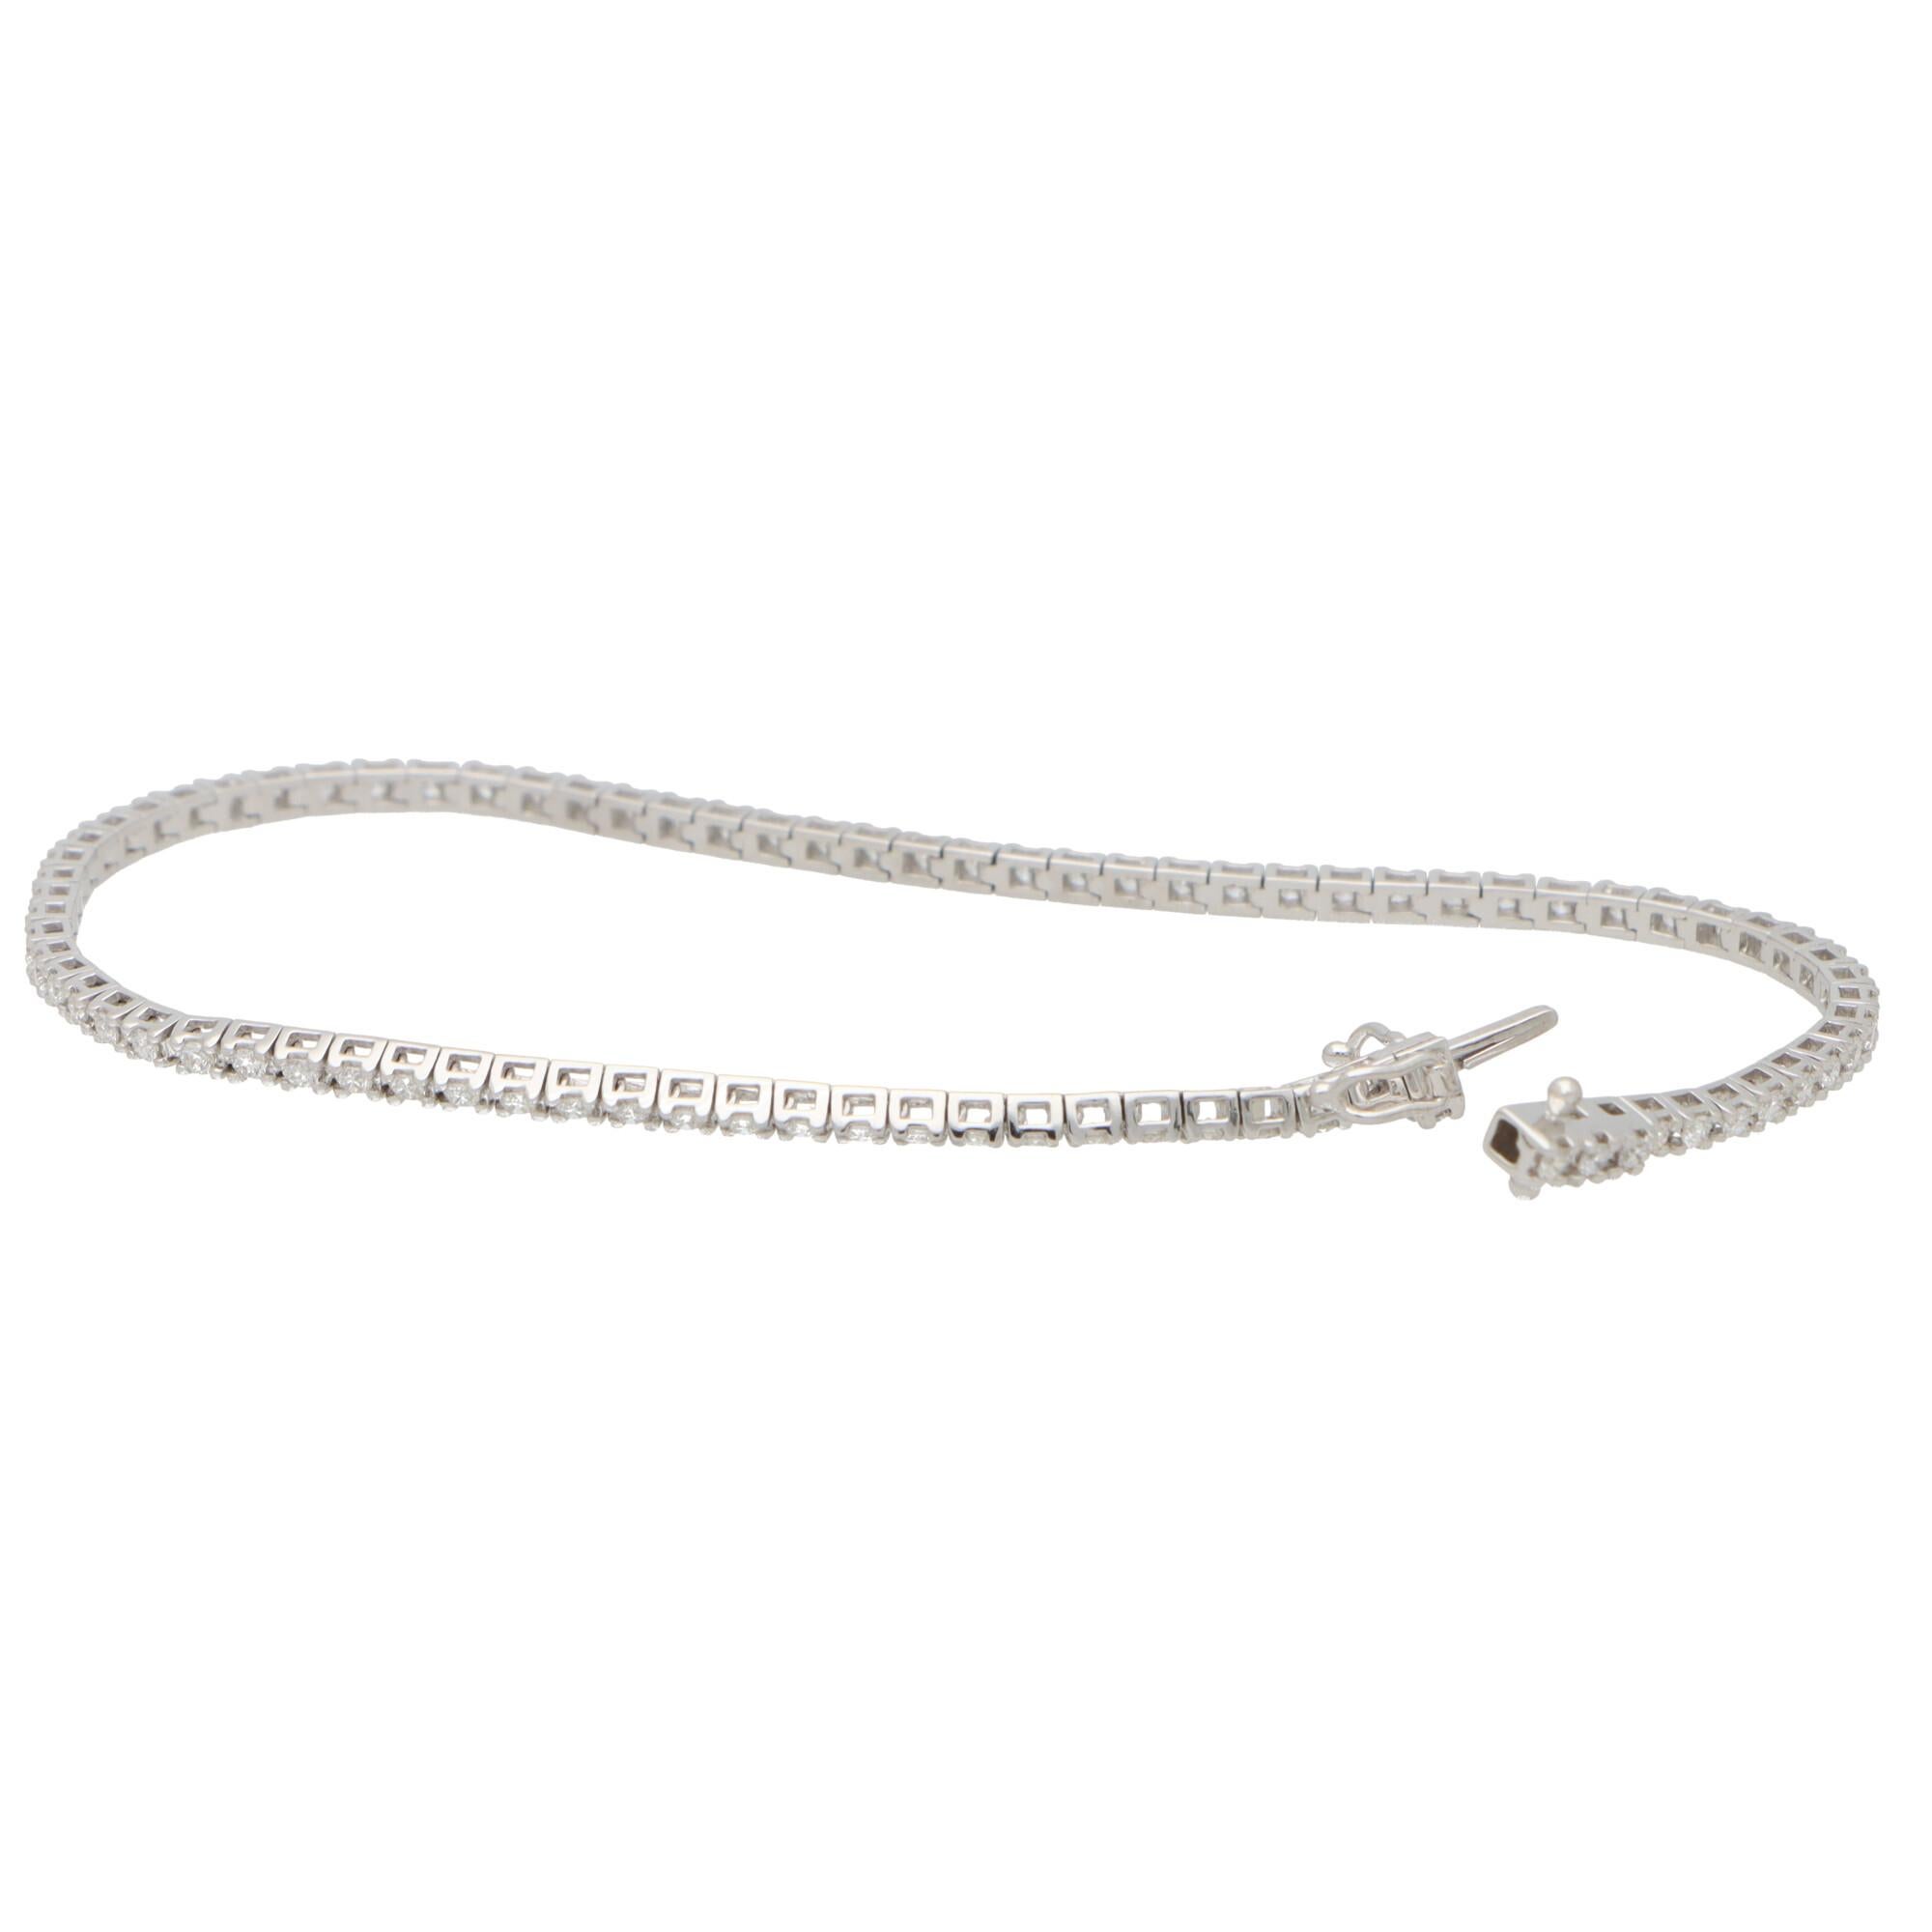  Un ravissant bracelet contemporain à ligne de diamants serti en or blanc 18k.

Le bracelet est composé d'un grand total de 83 diamants ronds de taille brillant étincelants, tous sertis solidement. 

Grâce à l'articulation des maillons, le bracelet